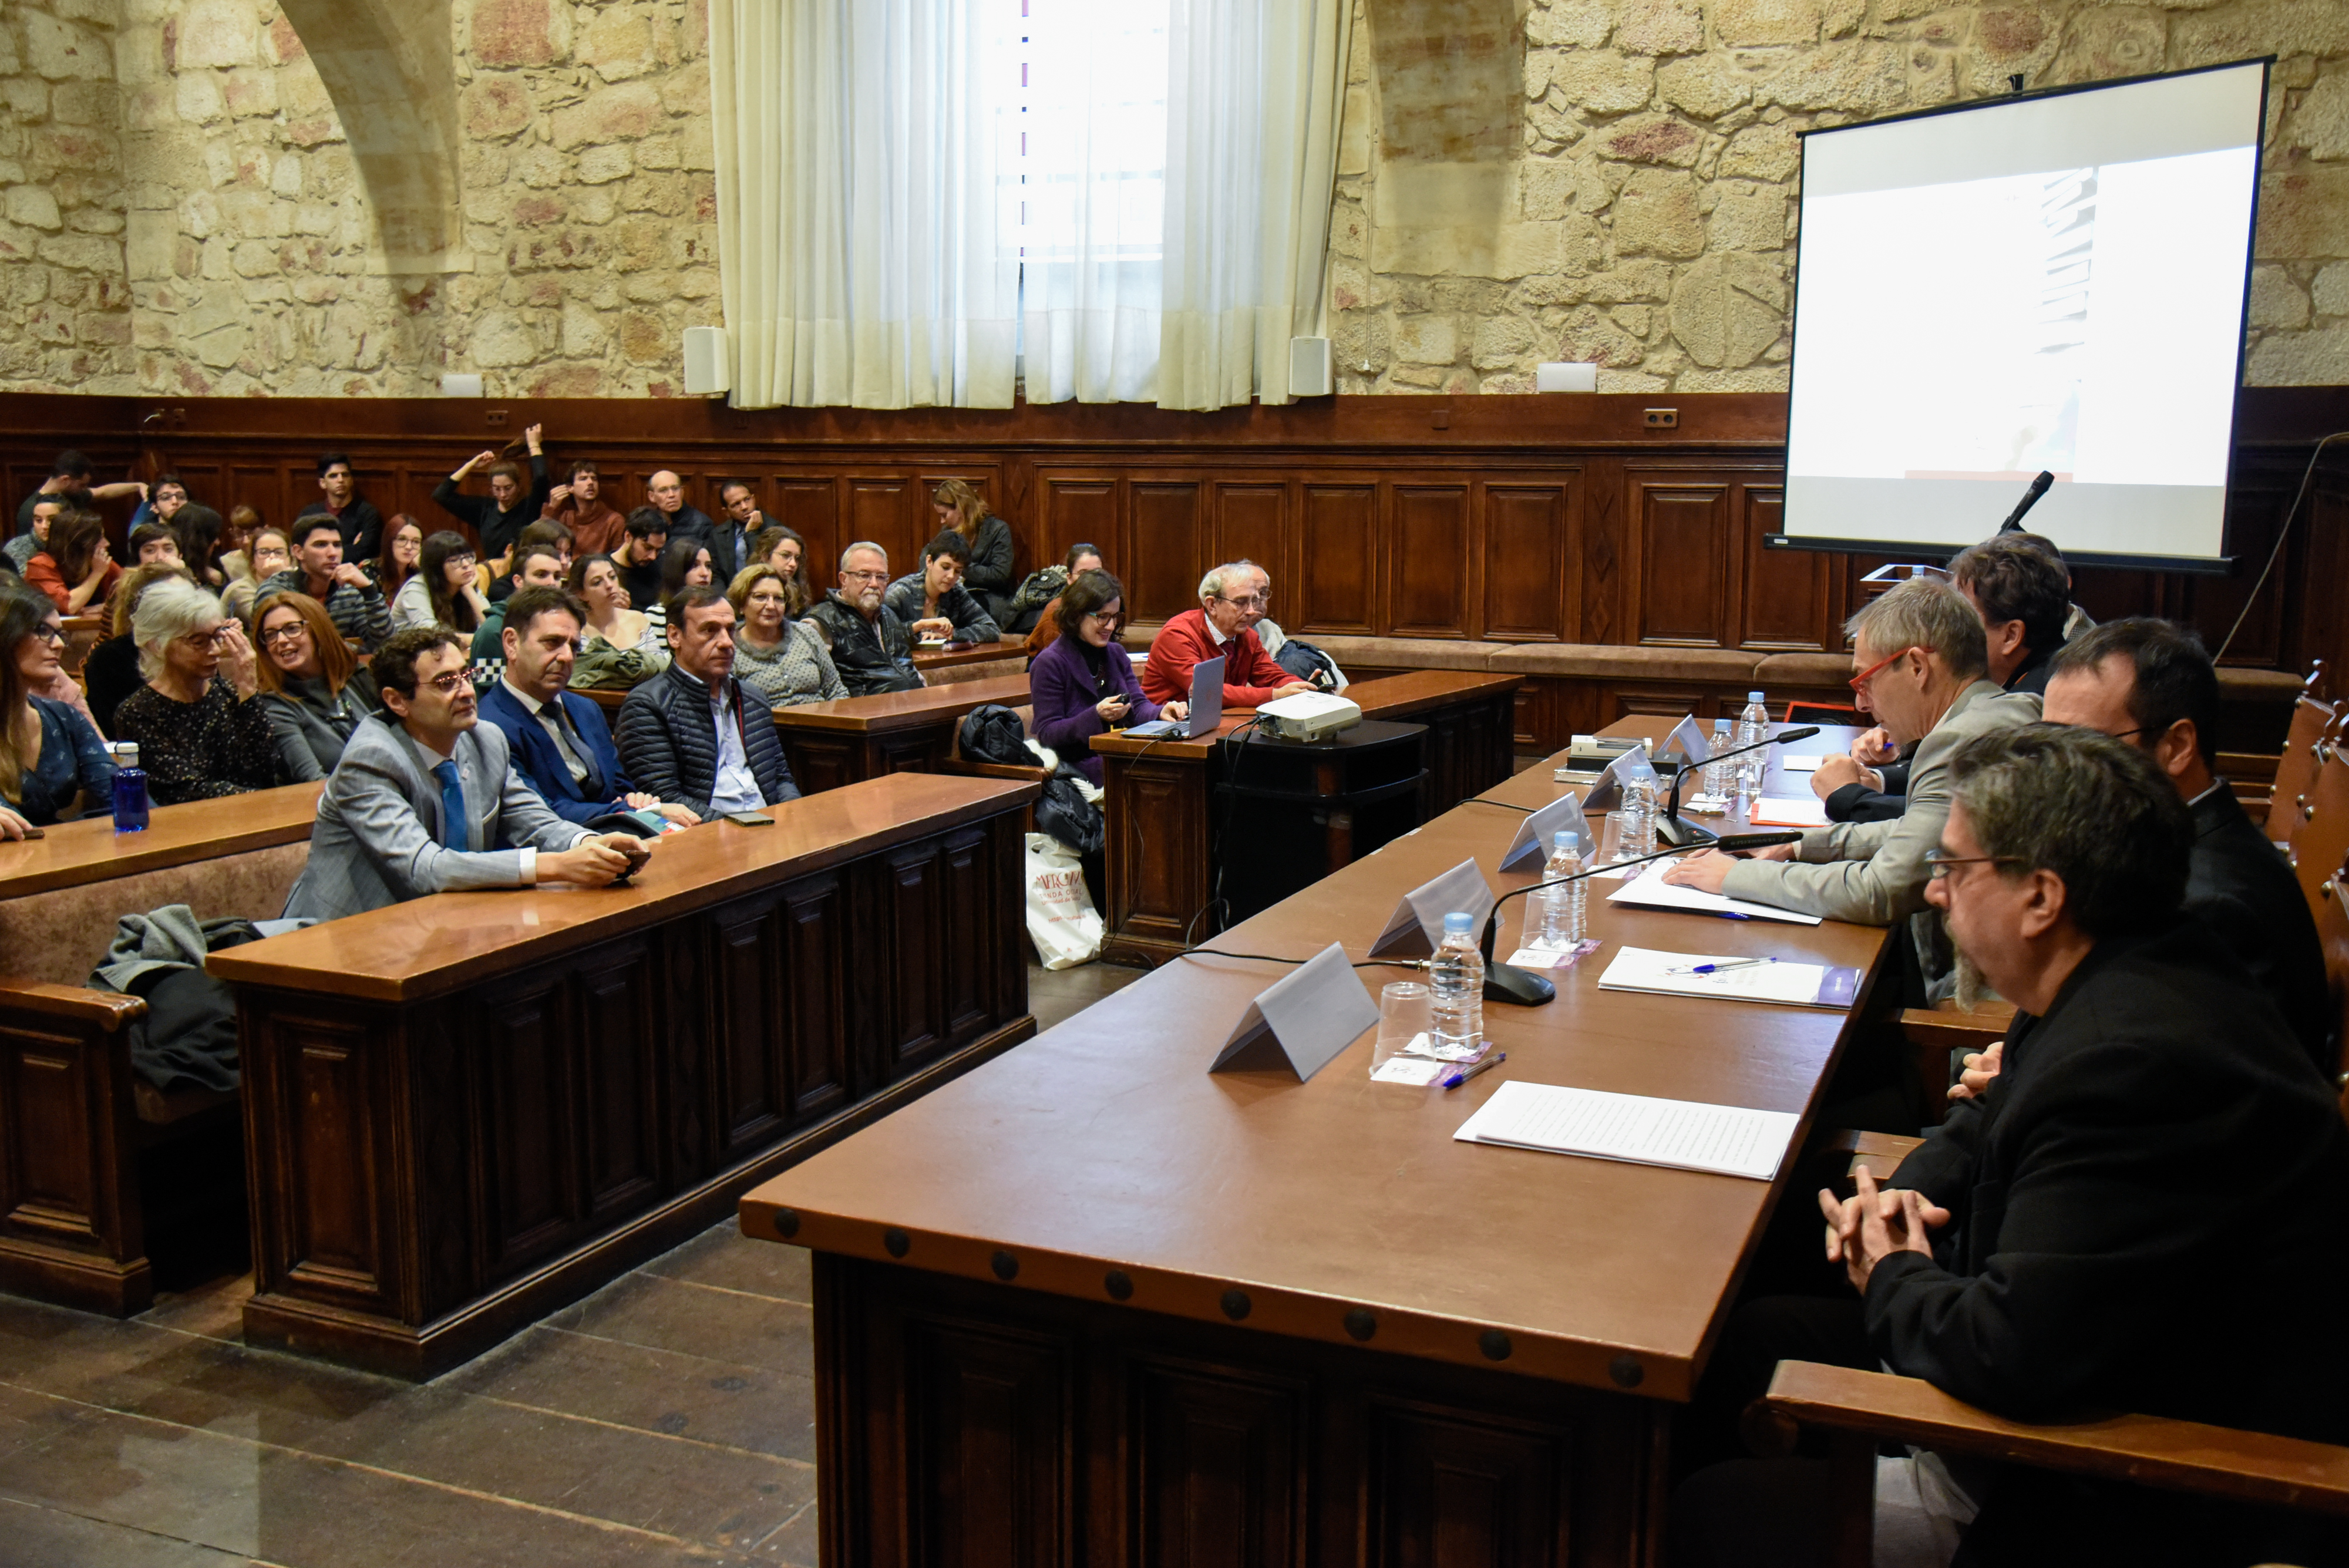 RUEDA DE PRENSA: El director del Instituto Cervantes, Luis García Montero, imparte una conferencia titulada ‘Las humanidades: una forma de compromiso’